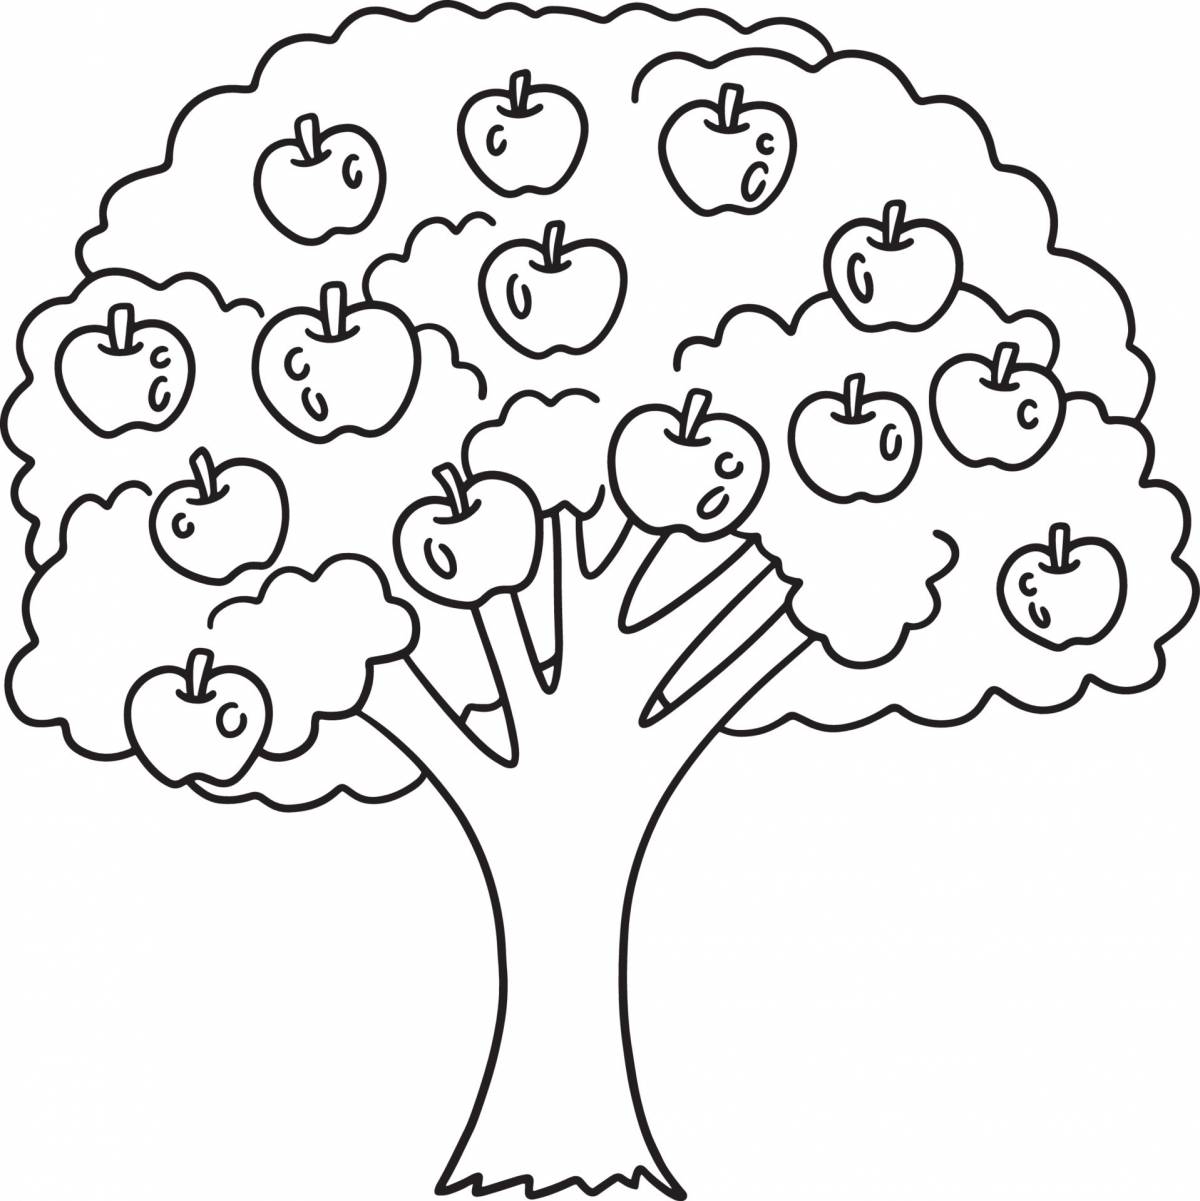 Раскраски Дерево с яблоками для детей (29 шт.) - скачать или распечатать  бесплатно #27771